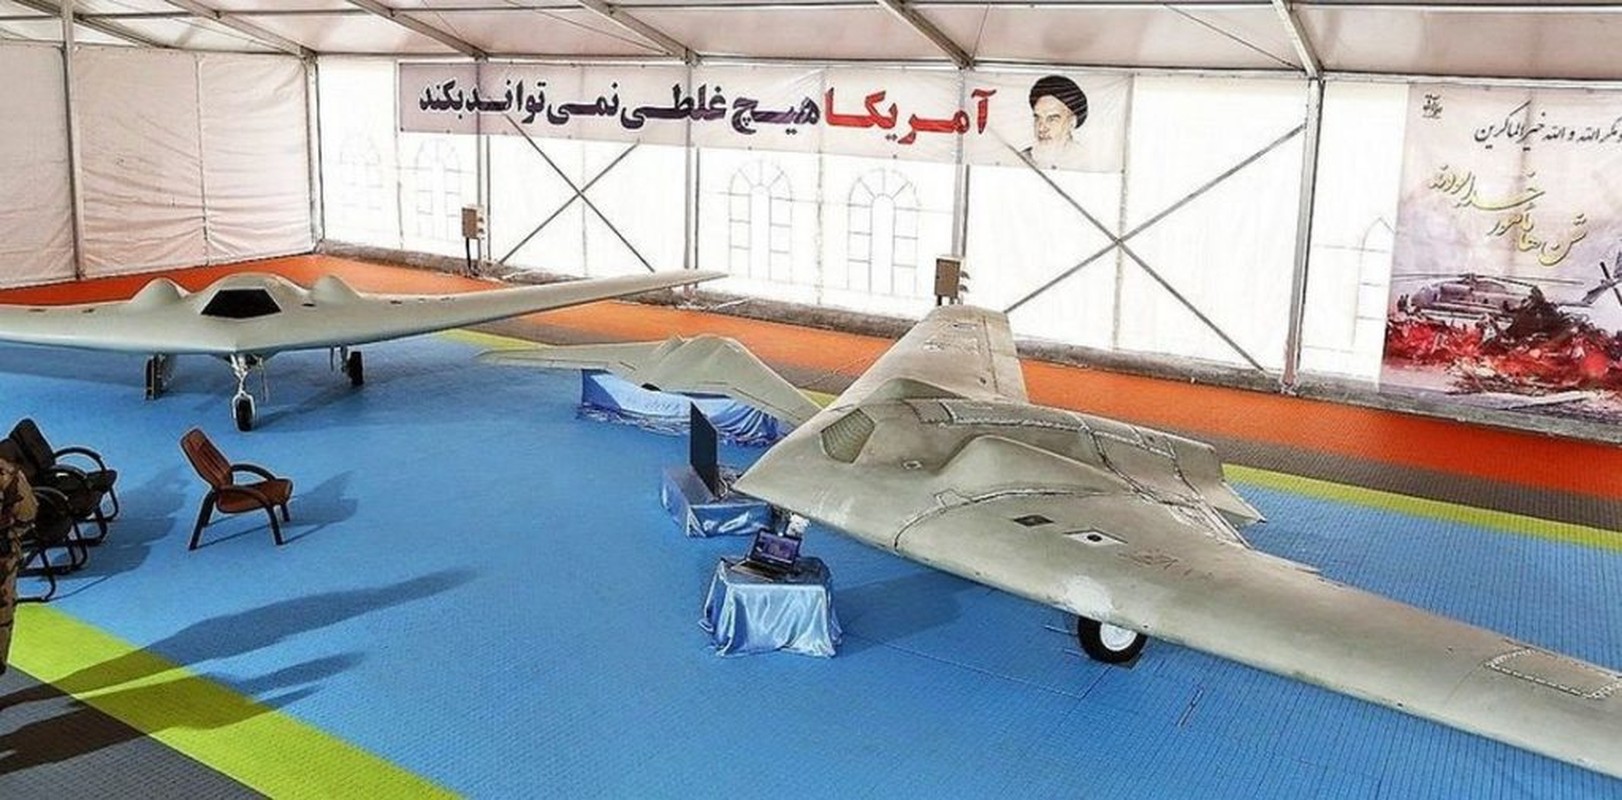 Lieu Iran co the thong tri khong phan Trung Dong bang UAV “nha trong“?